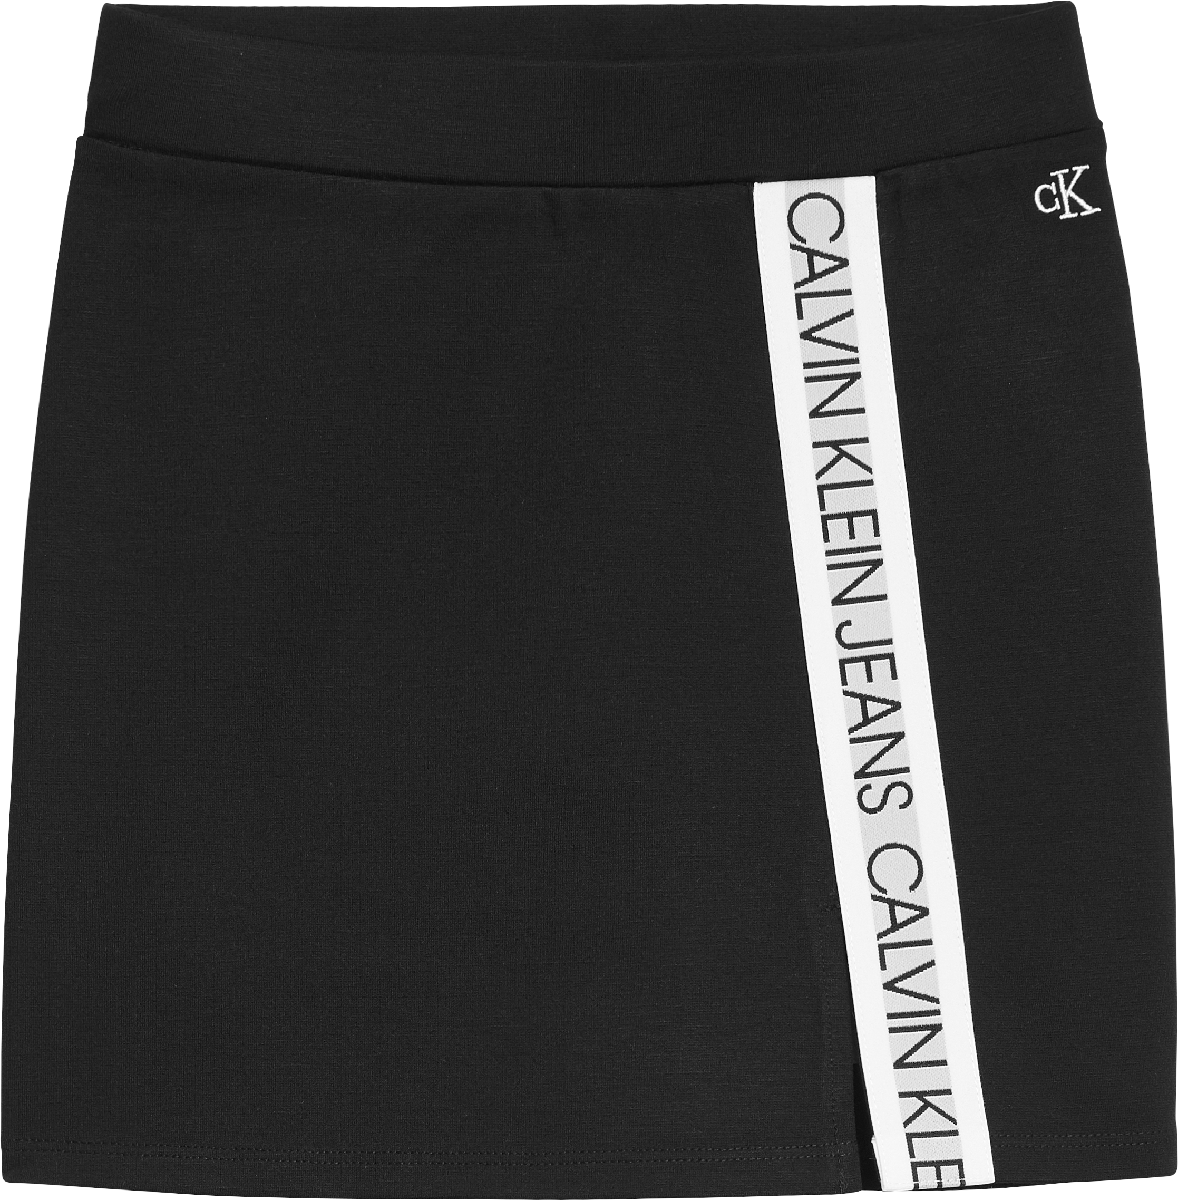 Meisjes LOGO TAPE PUNTO SKIRT van Calvin Klein in de kleur Ck Black in maat 176.